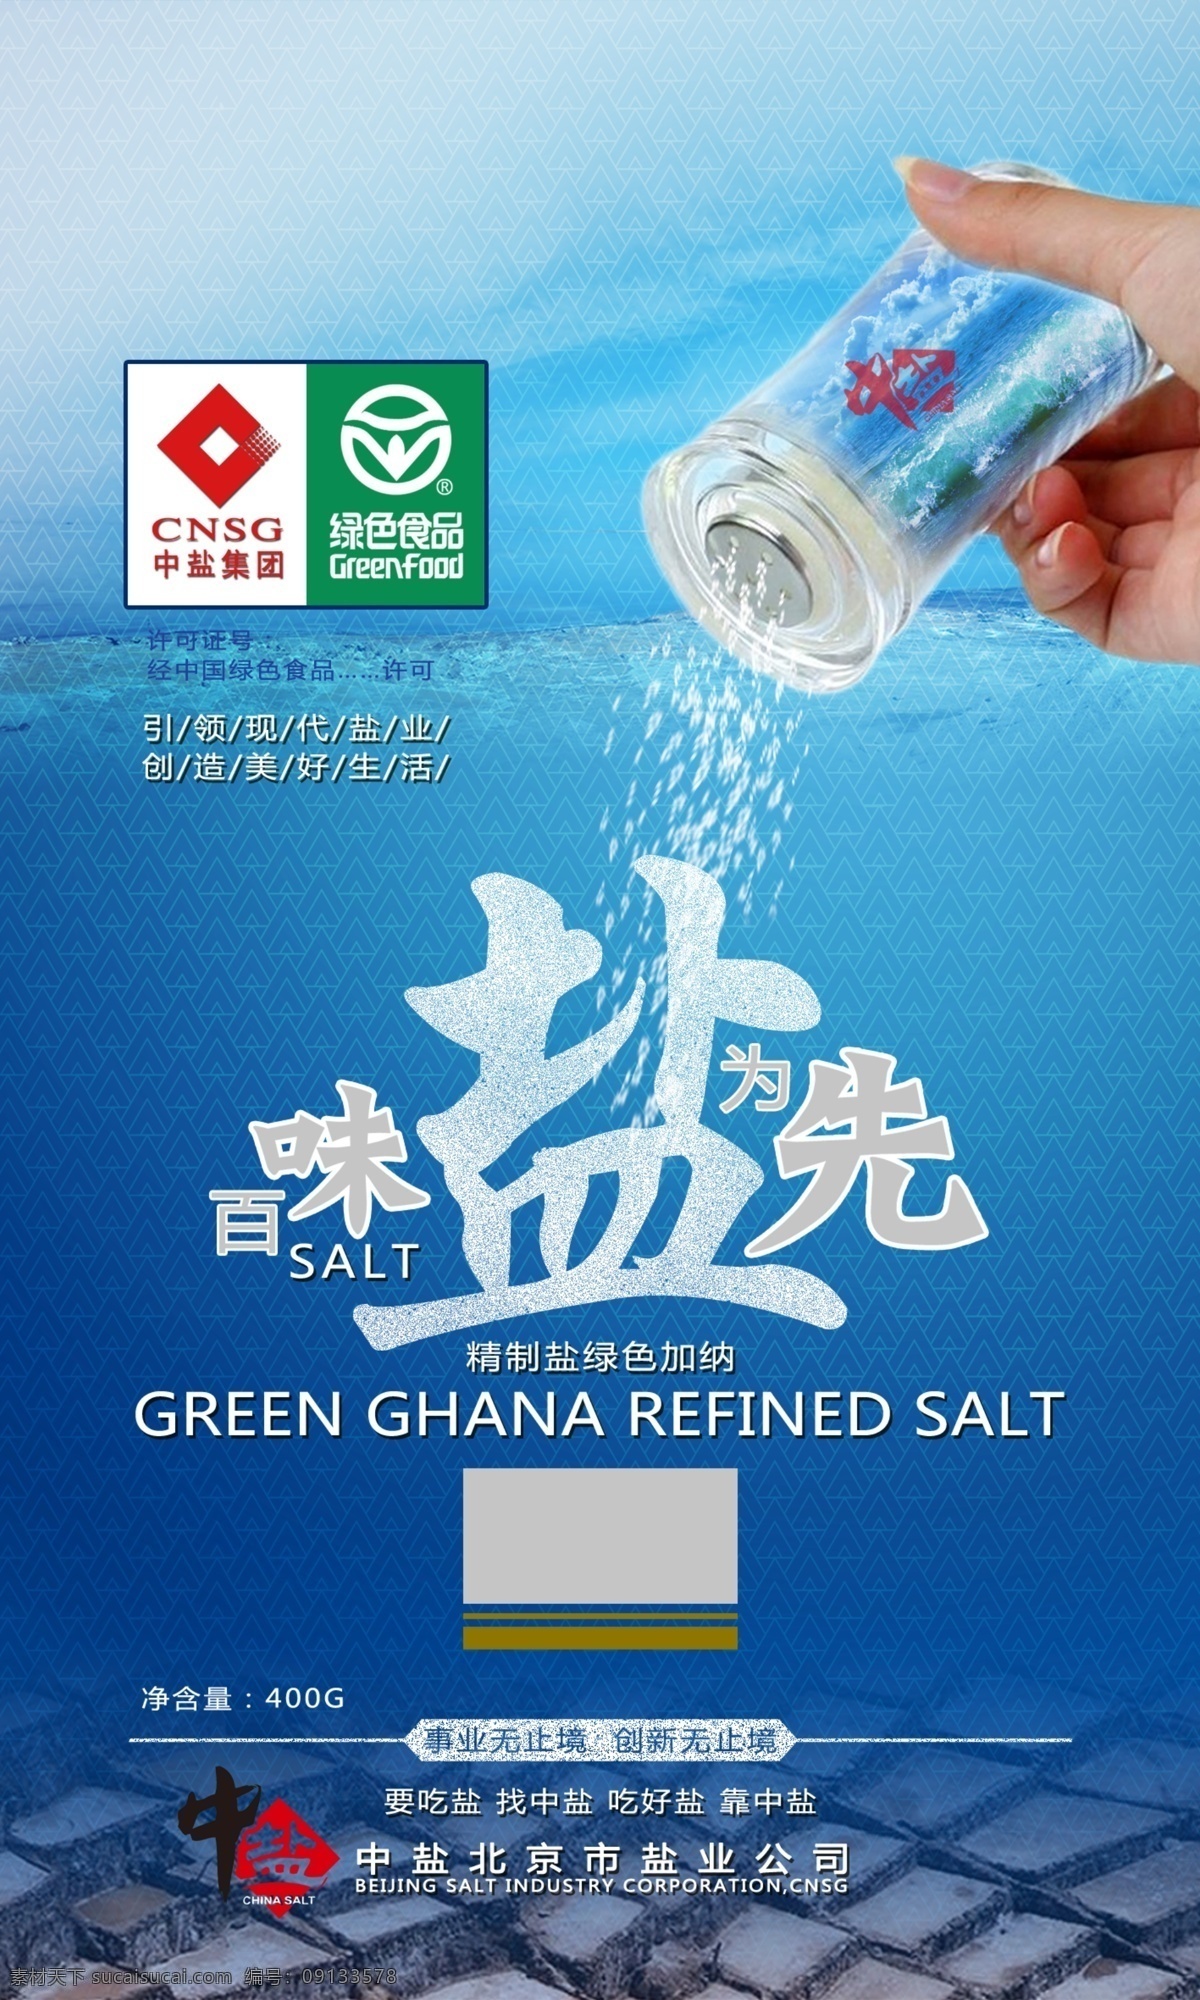 2014 中 盐 产品 包装设计 提案 中盐 食品包装 食盐 调料包装 视觉形象 2014中盐